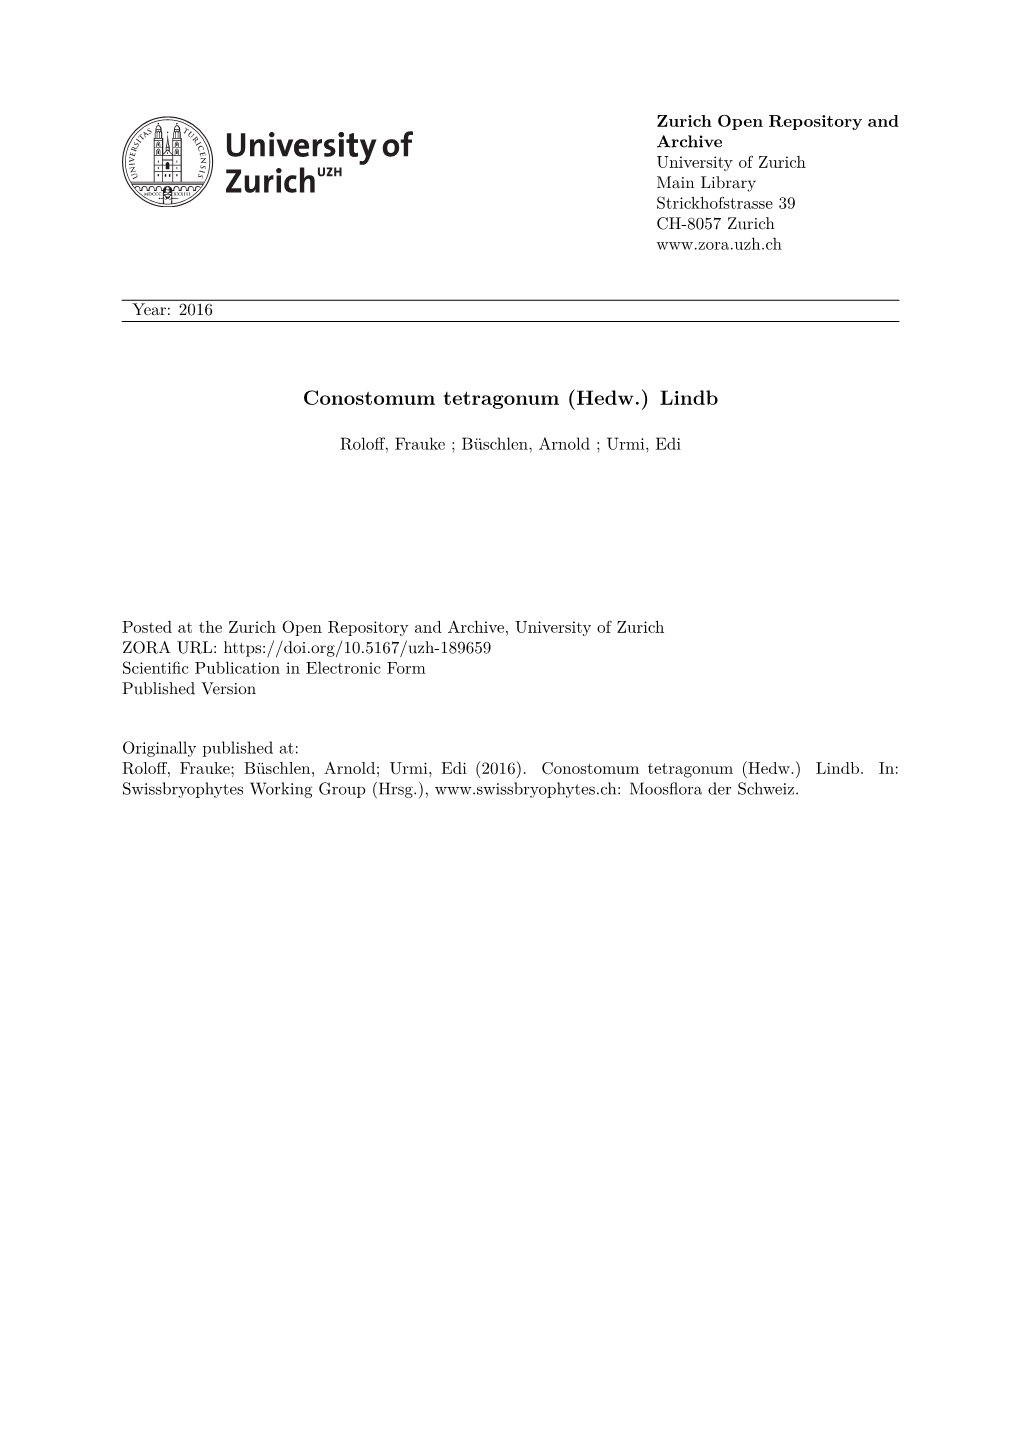 Conostomum Tetragonum (Hedw.) Lindb.In: Swissbryophytes Working Group (Hrsg.), Moosflora Der Schweiz